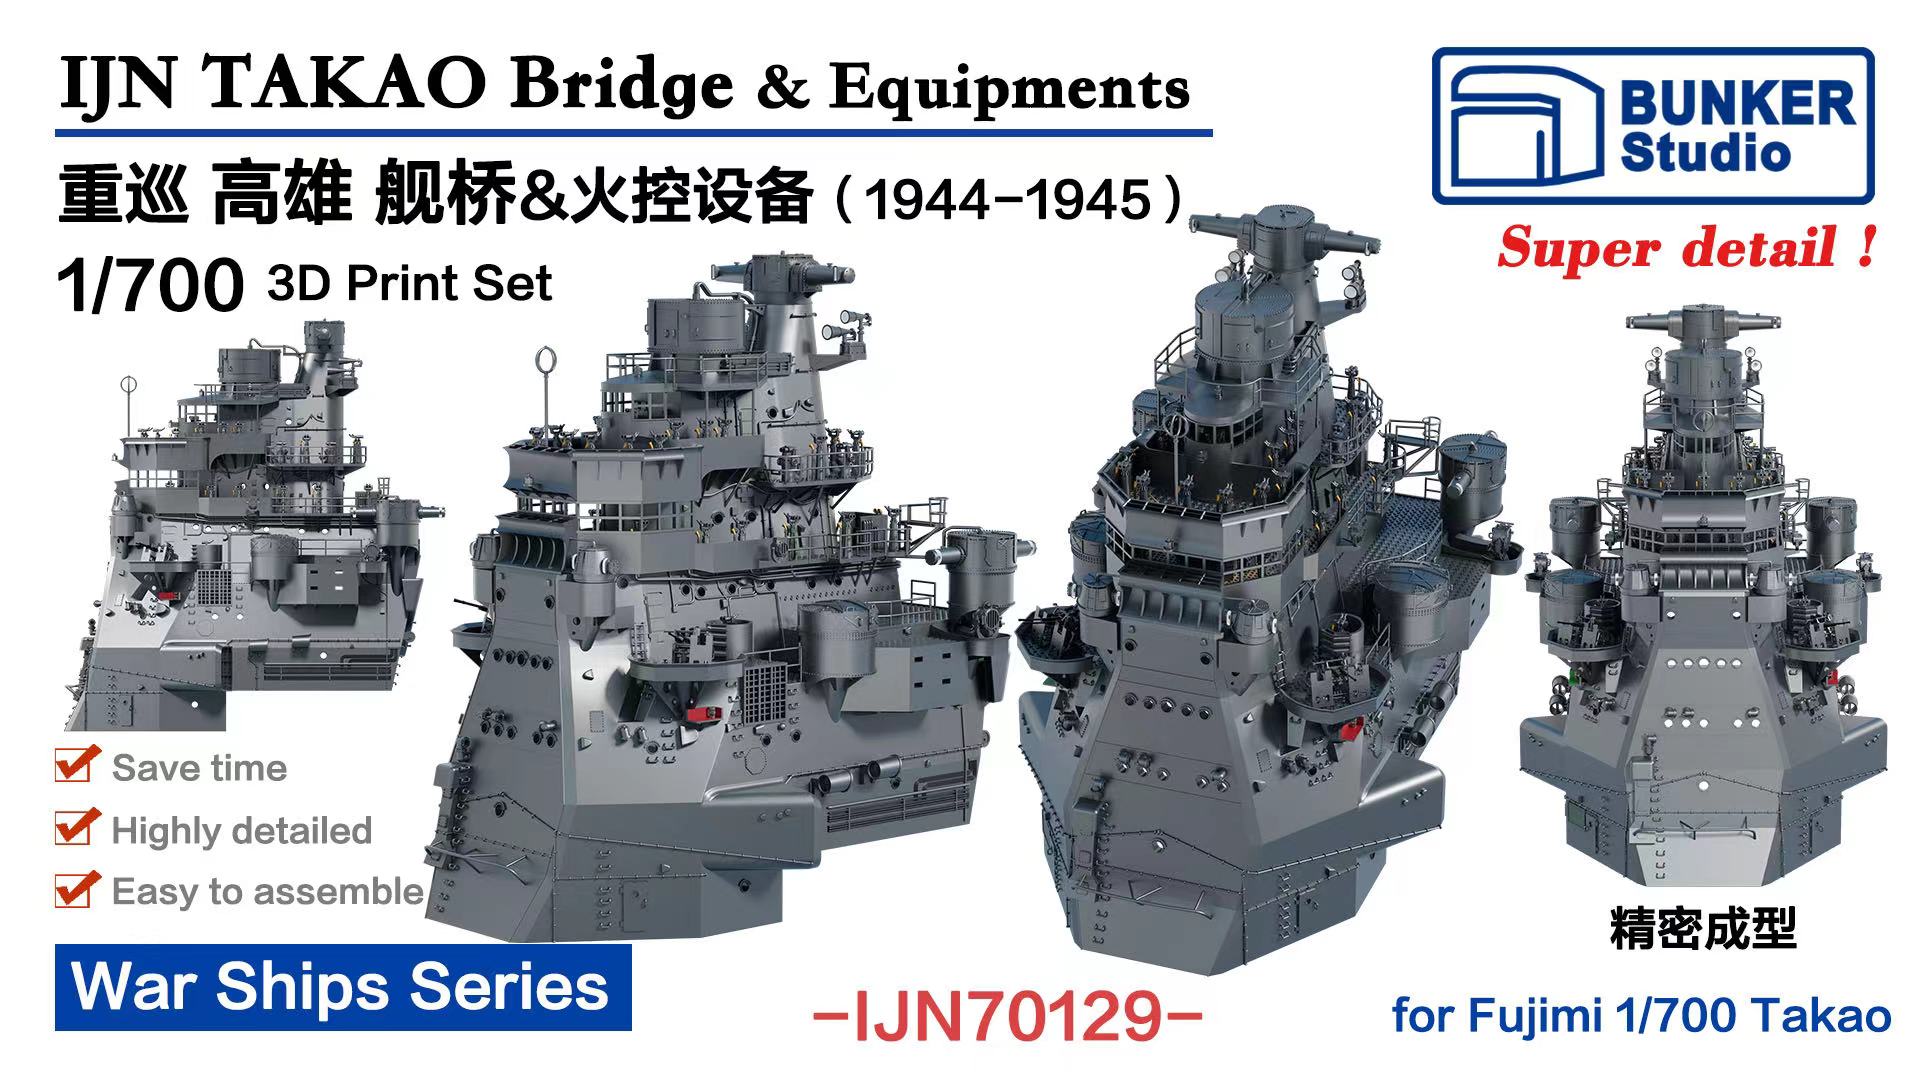 バンカースタジオ 1/700 日本海軍 重巡高雄 (1944-1945)用 艦橋&火器管制装置一体成型 (フジミ用) プラモデル用パーツ